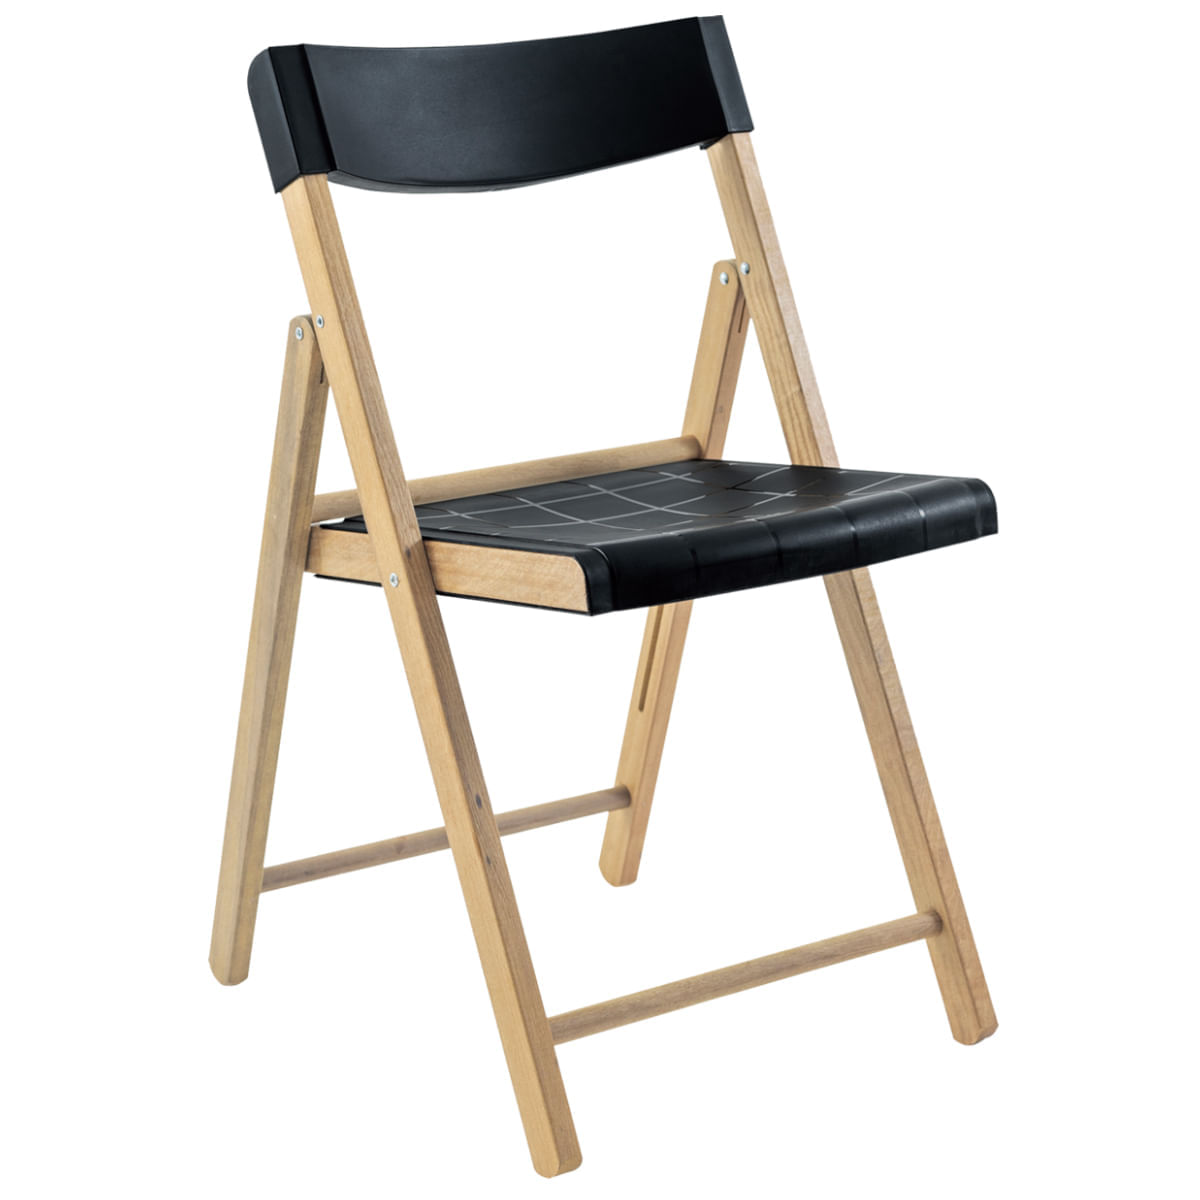 Cadeira de Madeira Dobrável Tramontina Potenza Itaúba Natural com Assento e Encosto em Polipropileno Preto